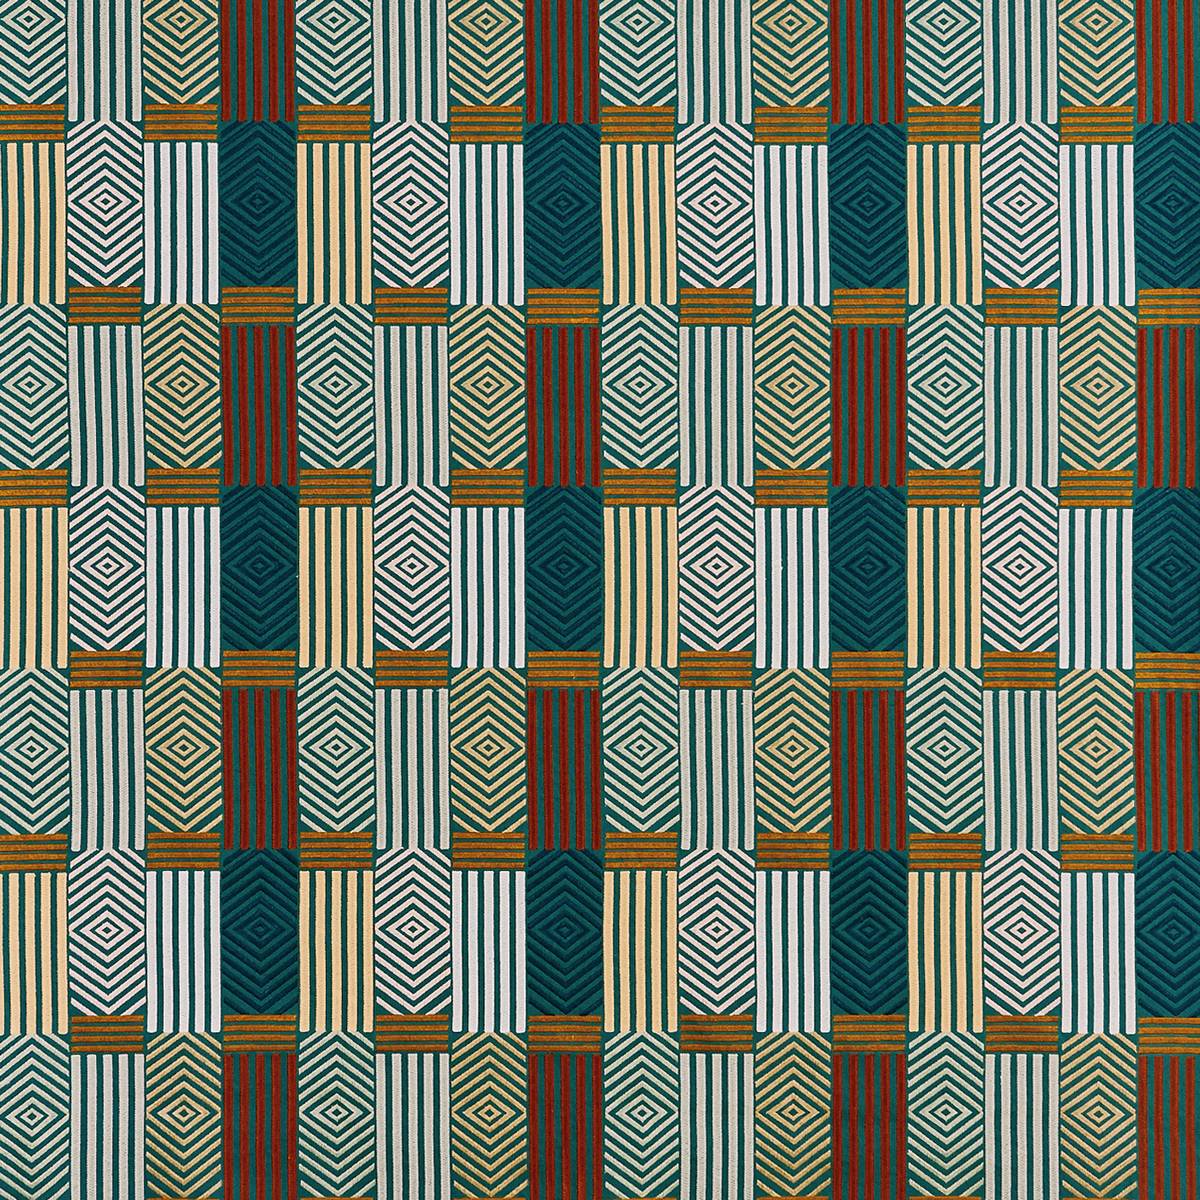 Blake Autumn Fabric by Prestigious Textiles